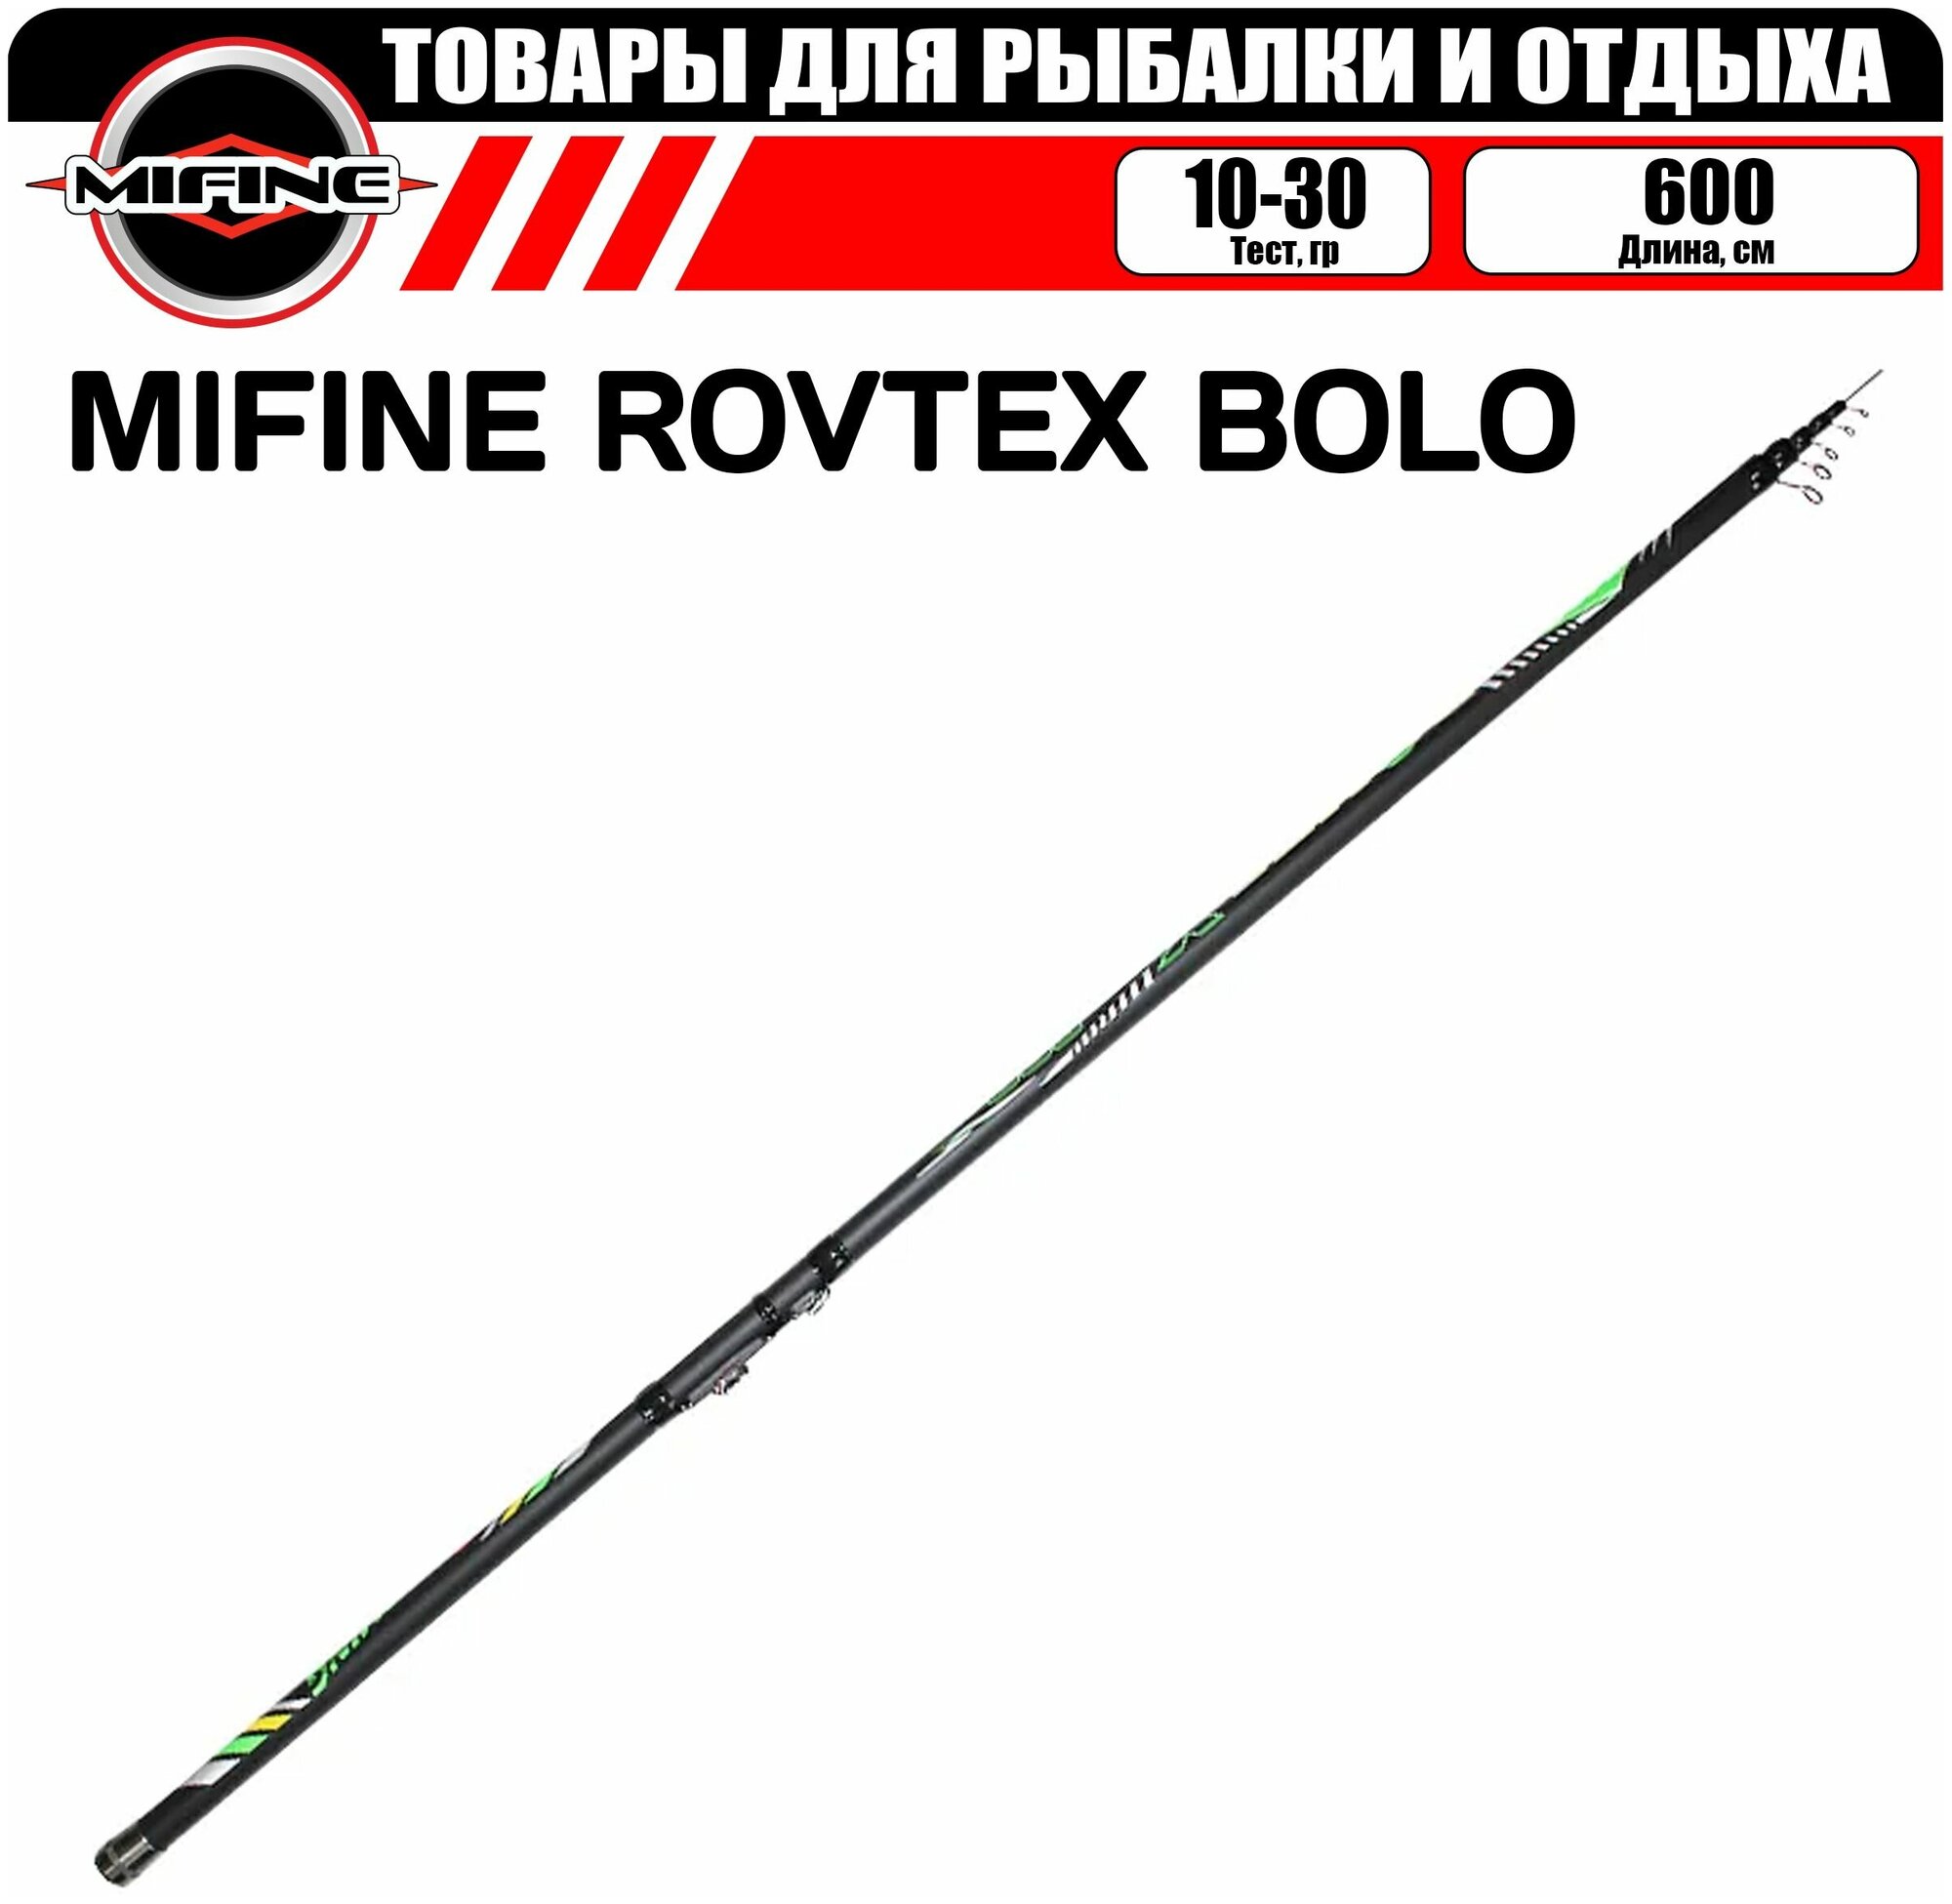 Удилище со средне-быстрым строем MIFINE ROVTEX BOLO С/К 6.0м (10-30гр), для рыбалки, рыболовное, телескопическое, болонское